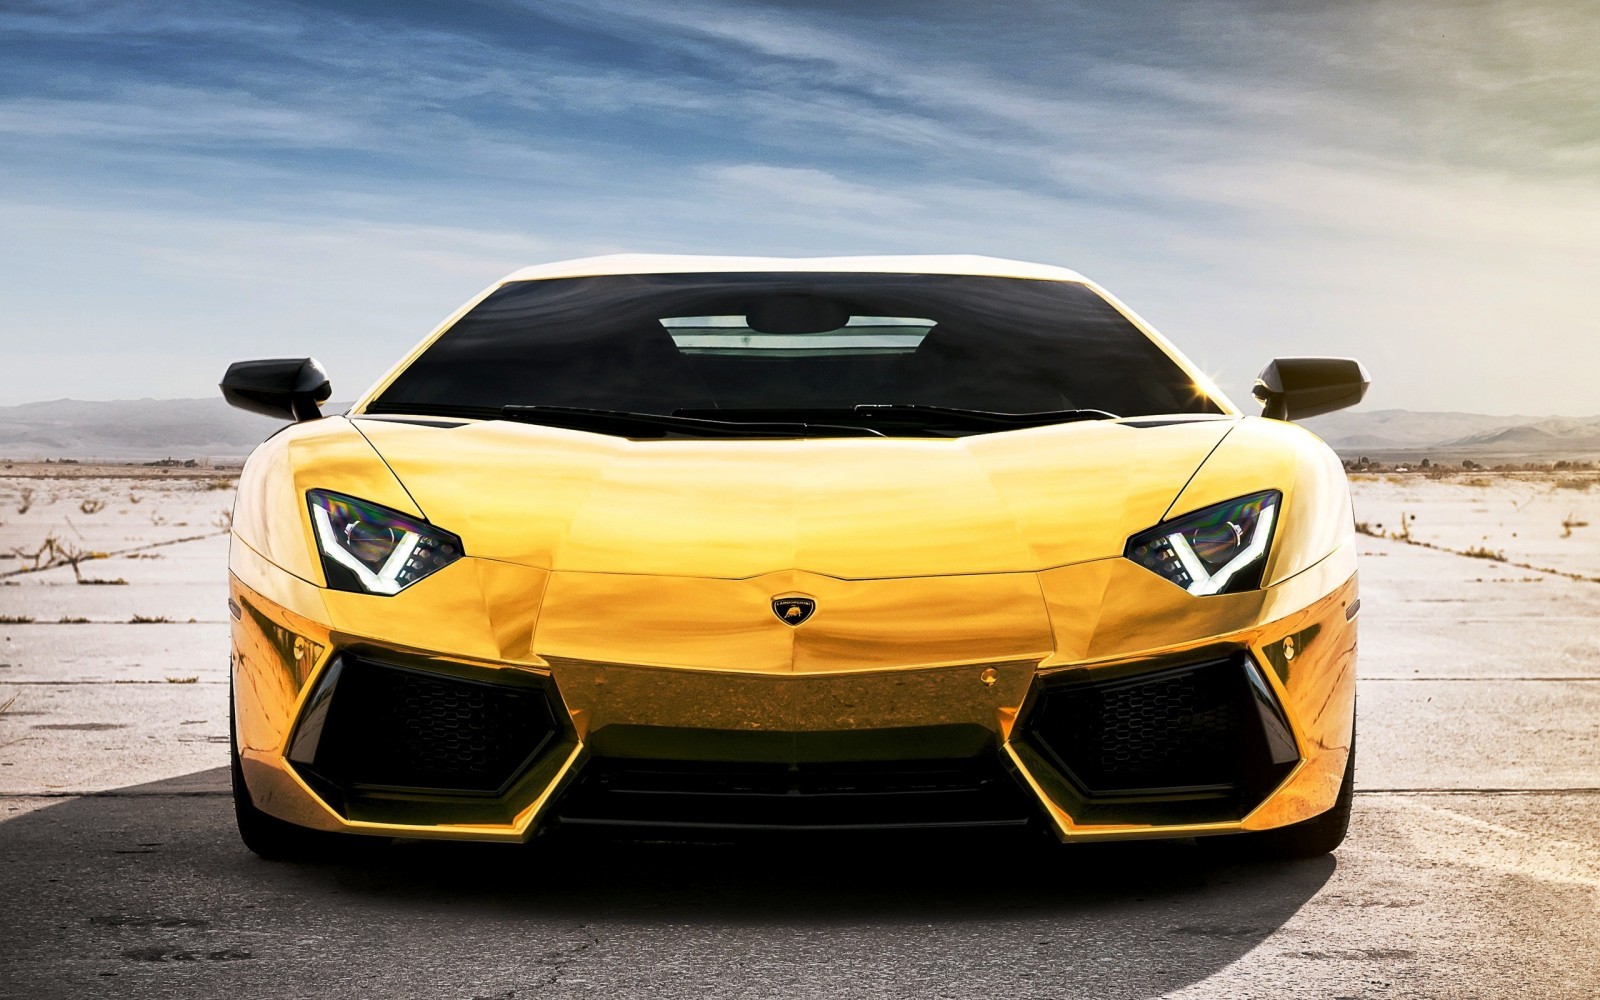 General 1600x1000 Lamborghini Lamborghini Aventador yellow cars supercars vehicle car italian cars Volkswagen Group